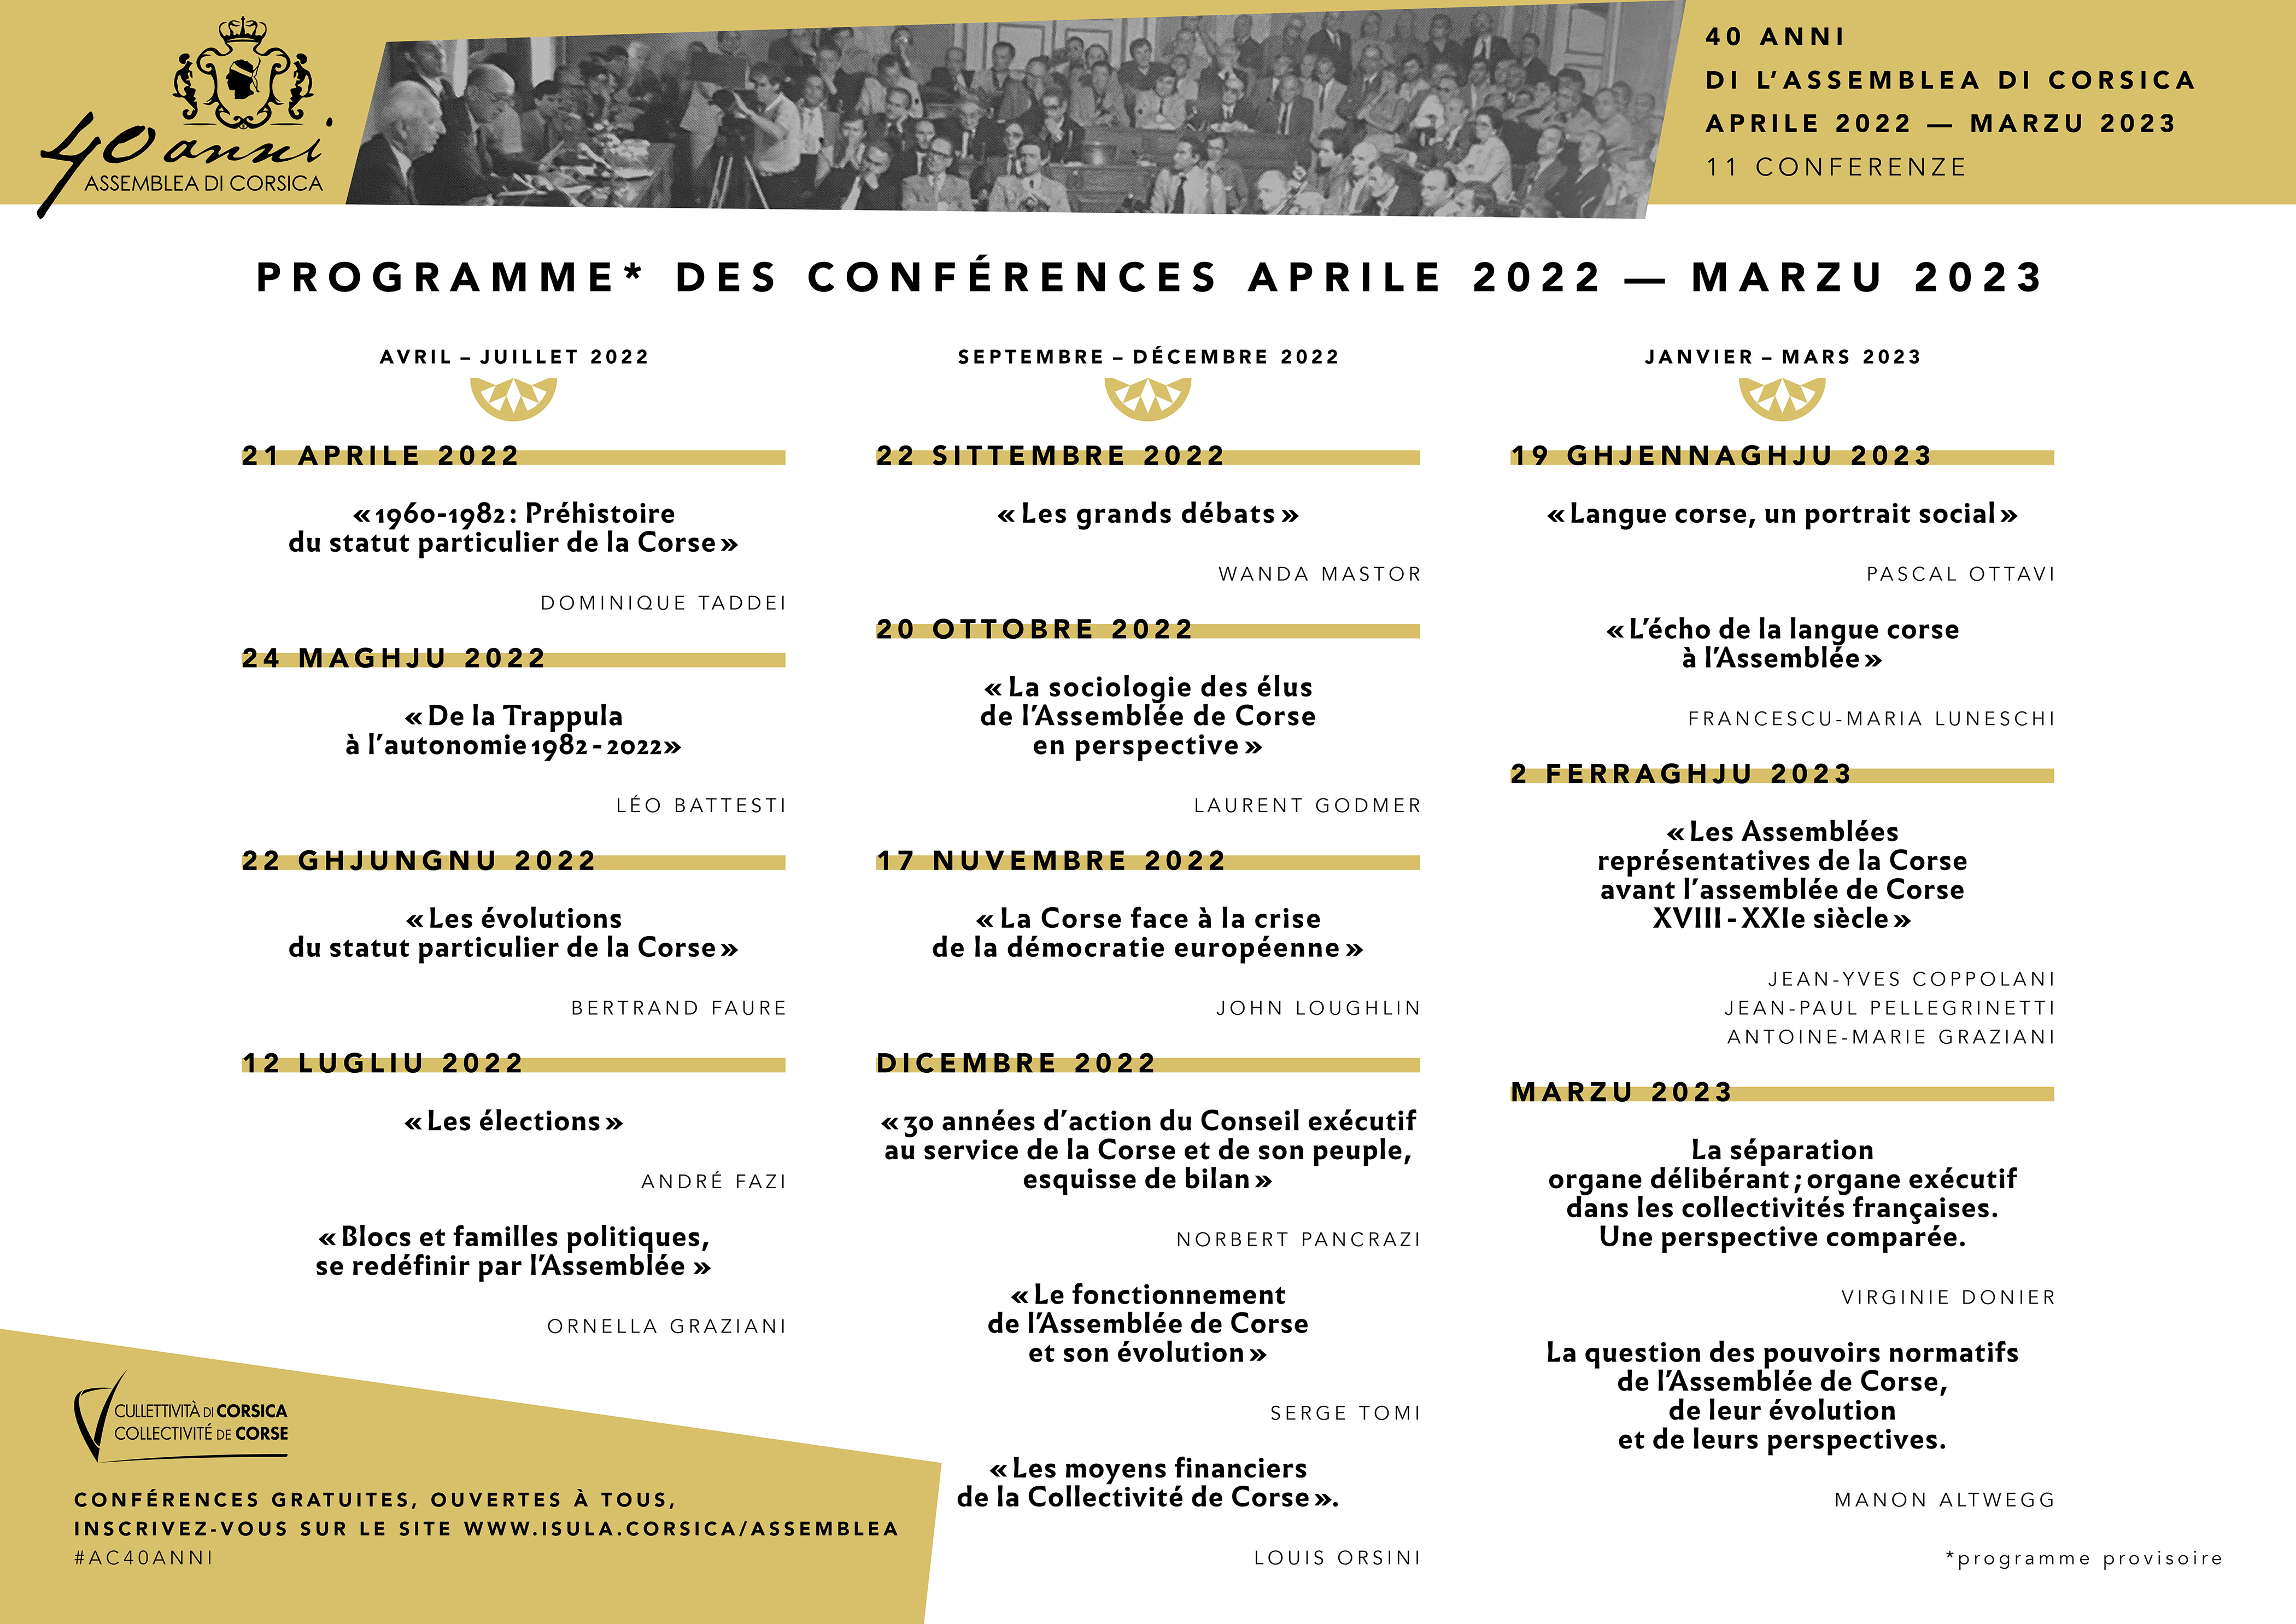 40 anni di l'Assemblea di Corsica : (re)voir les conférences 